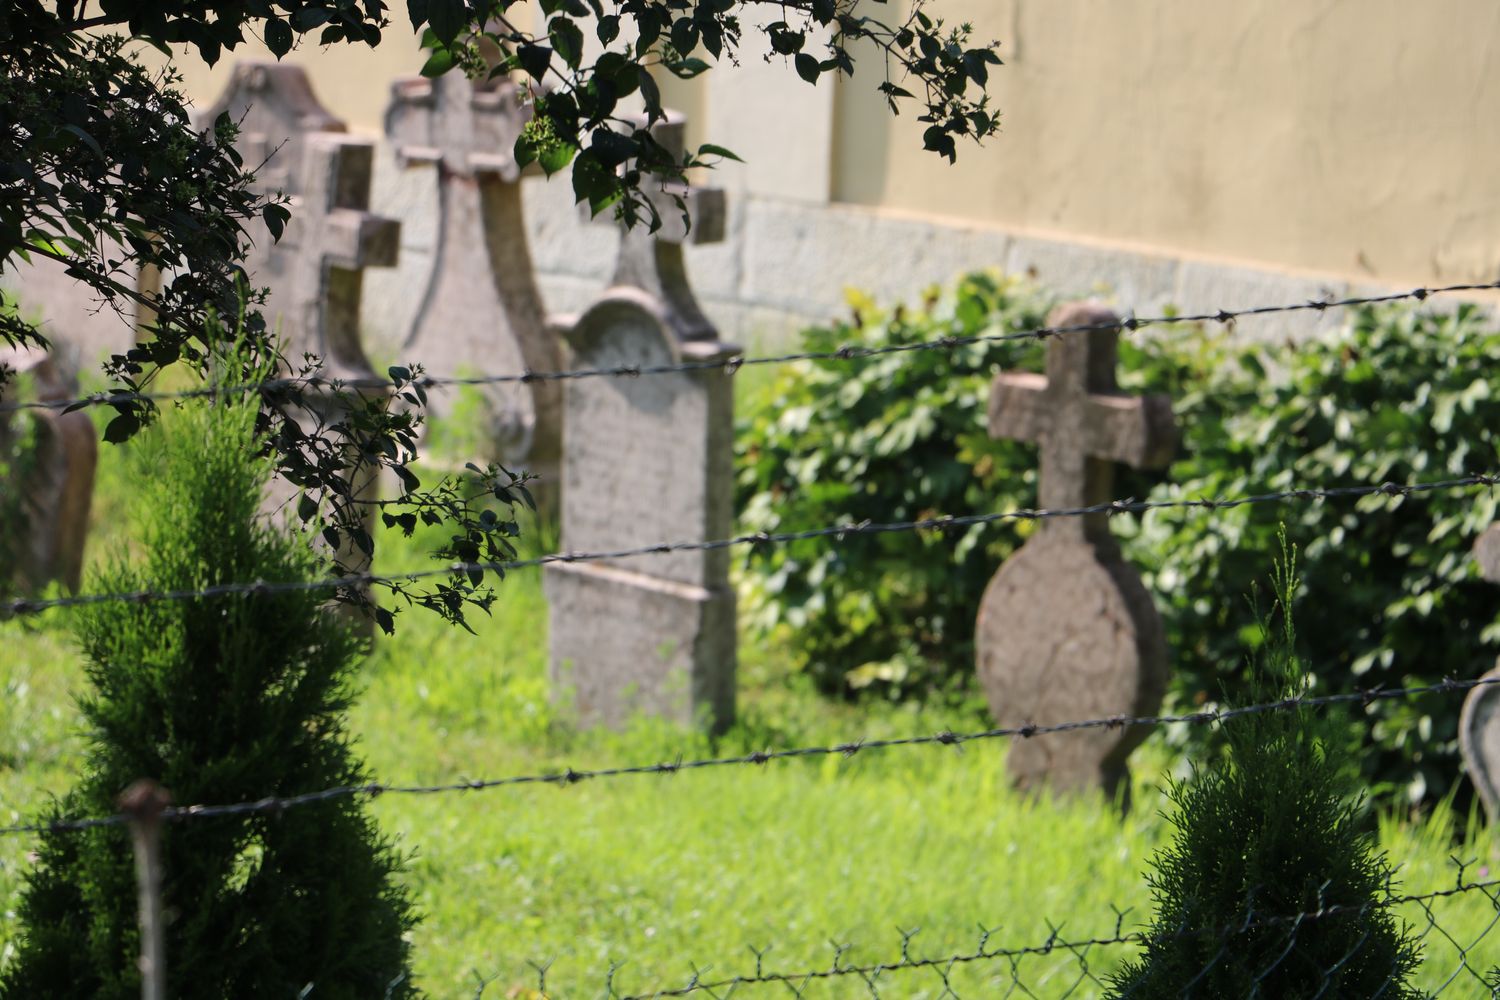 Élve temettek el egy embert Komáromban? 140 éve kérdés